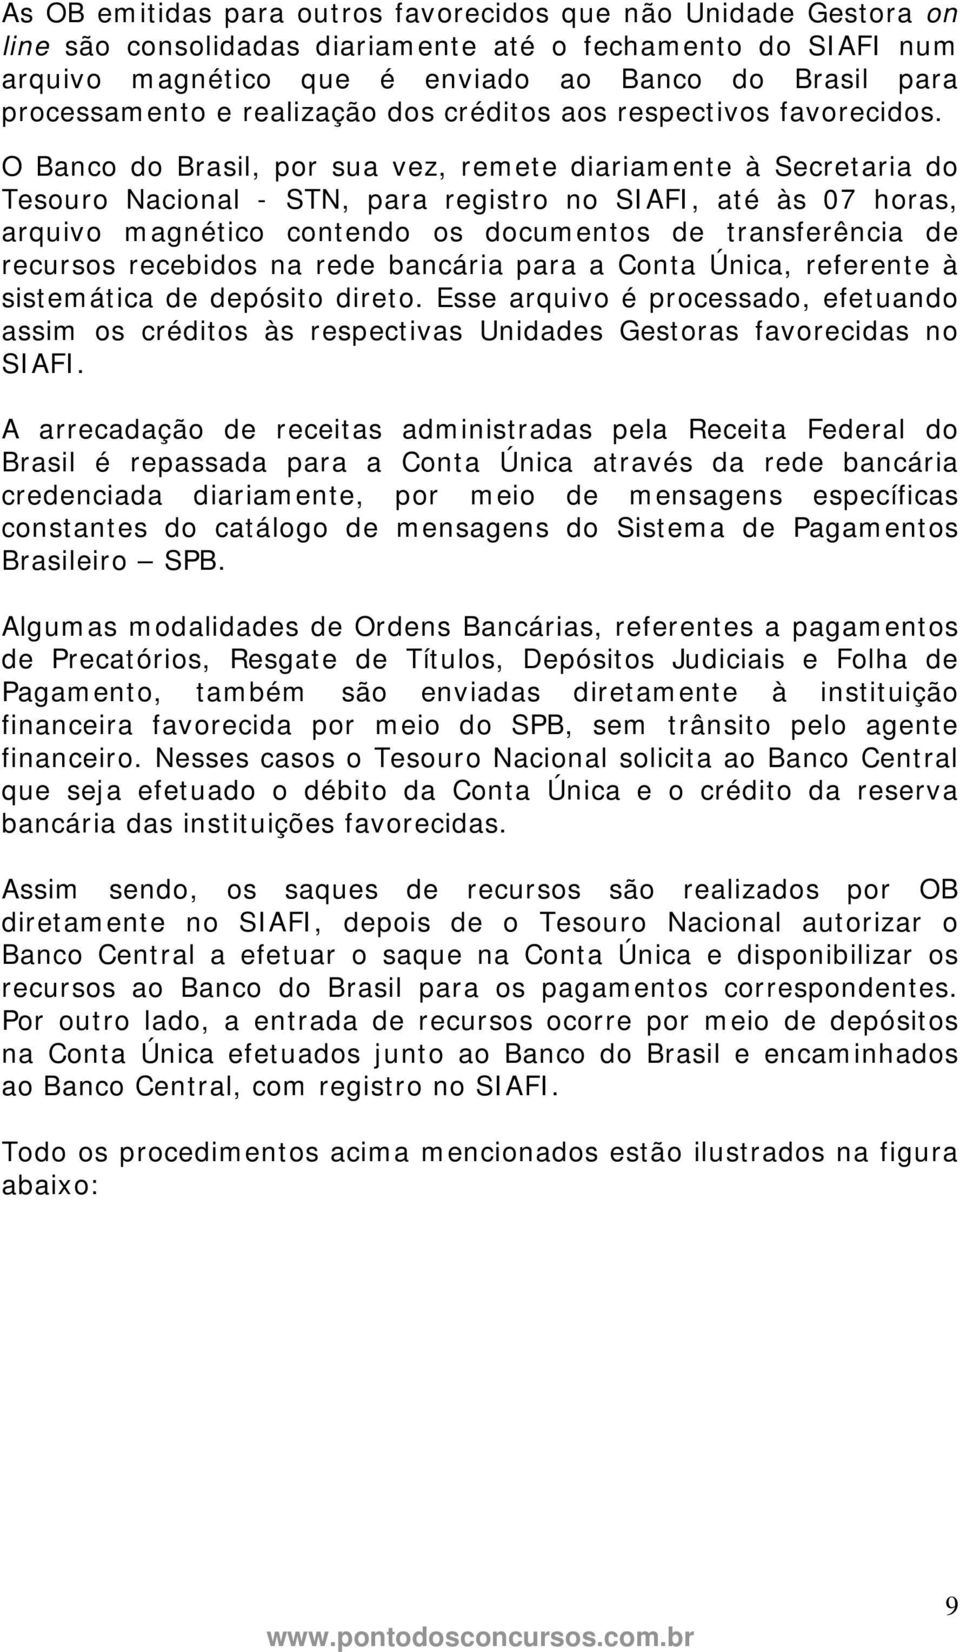 O Banco do Brasil, por sua vez, remete diariamente à Secretaria do Tesouro Nacional - STN, para registro no SIAFI, até às 07 horas, arquivo magnético contendo os documentos de transferência de